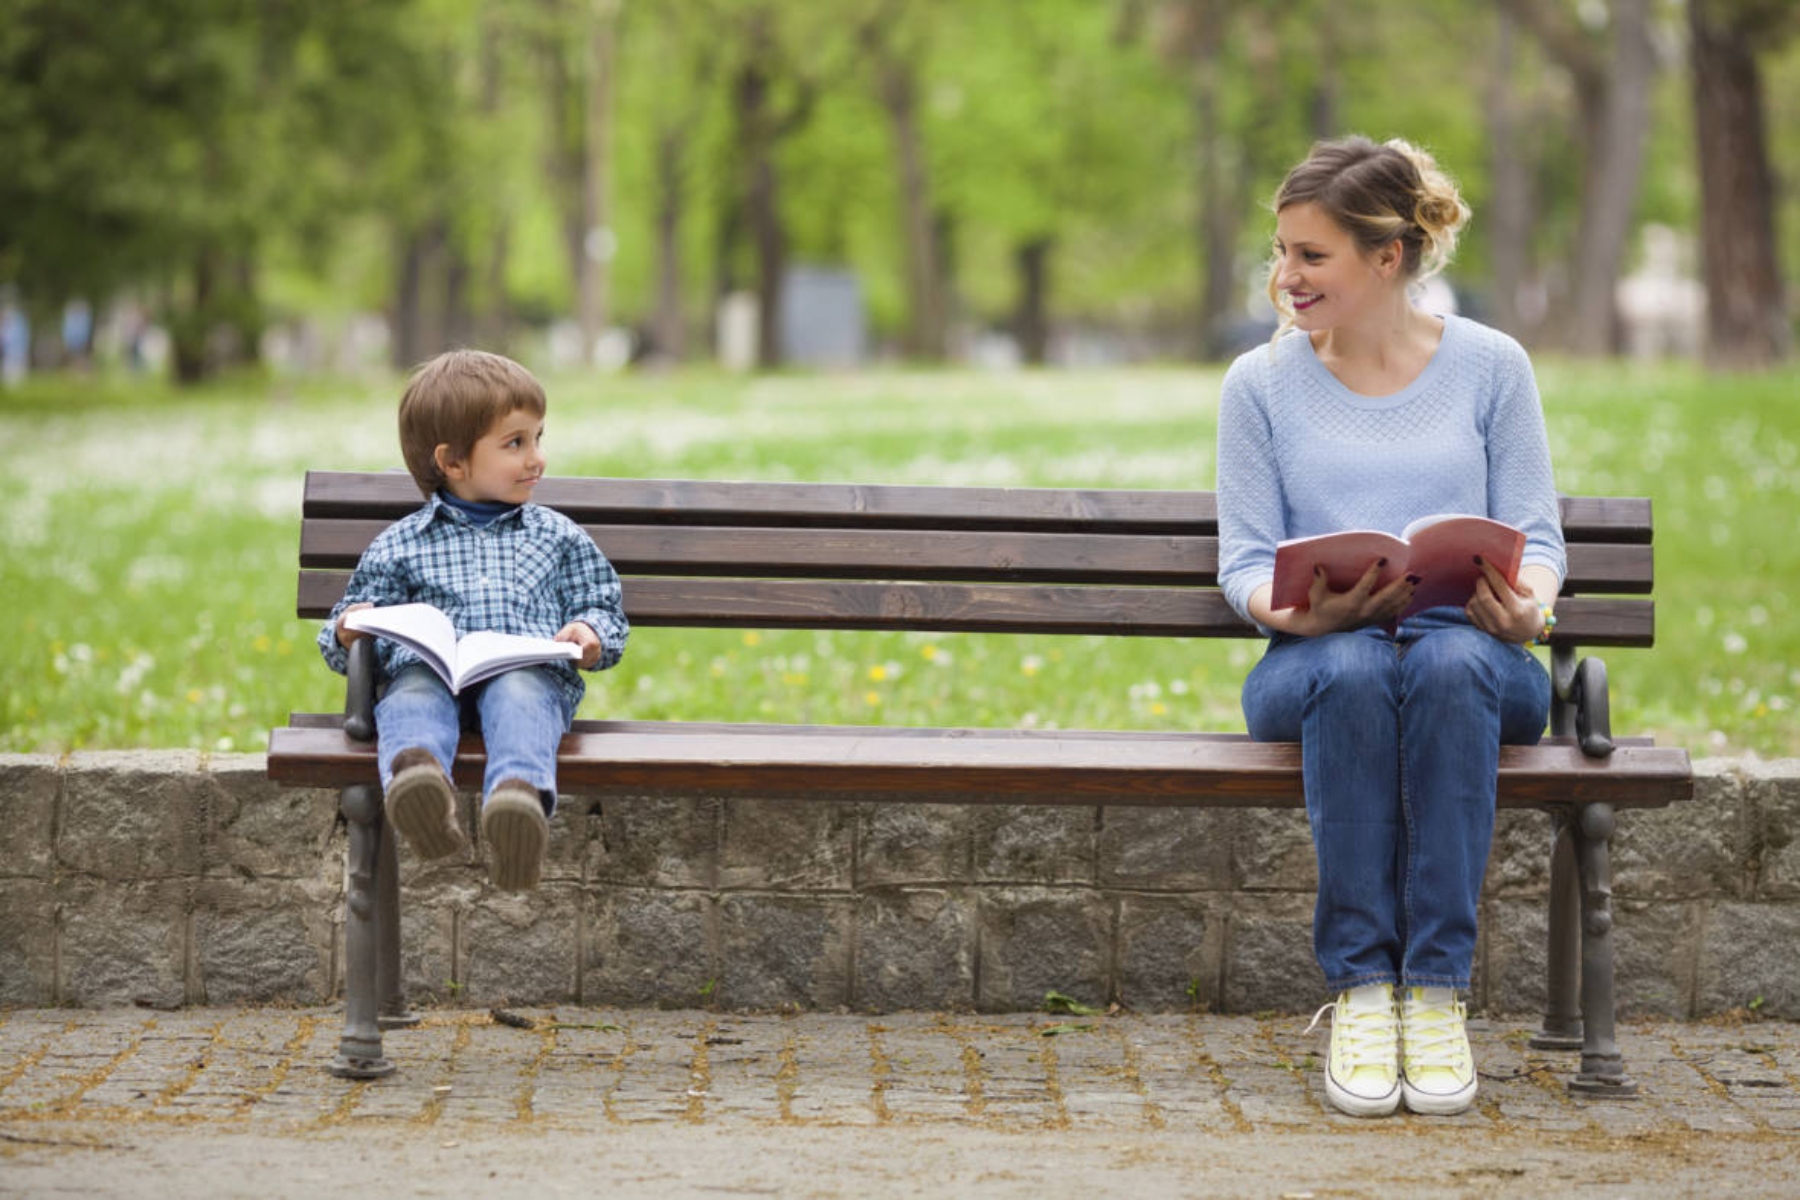 Παιδιά ηθική: Τα παιδιά λαμβάνουν υπόψη τις επιλογές του παρελθόντος όταν κρίνουν τους άλλους